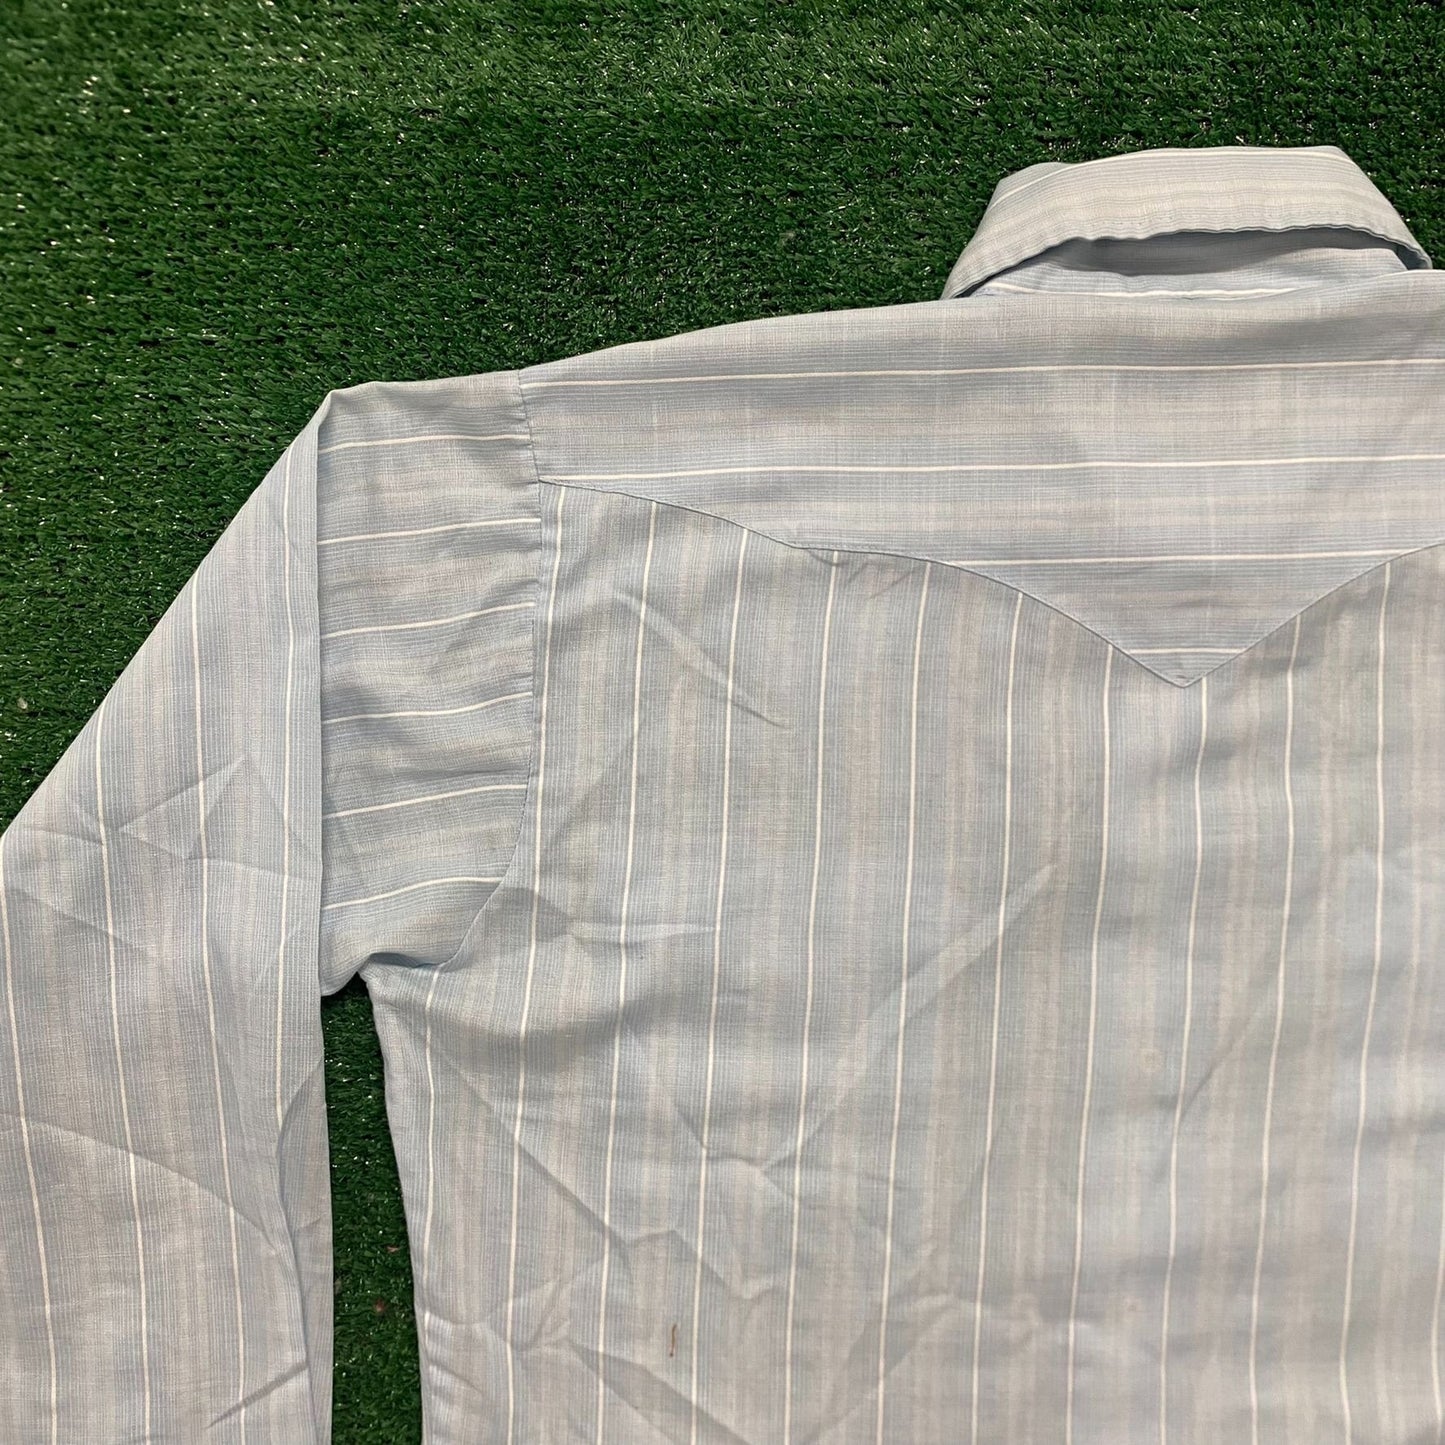 Vintage 80s Panhandle Slim Striped Pearl Snap Western Shirt